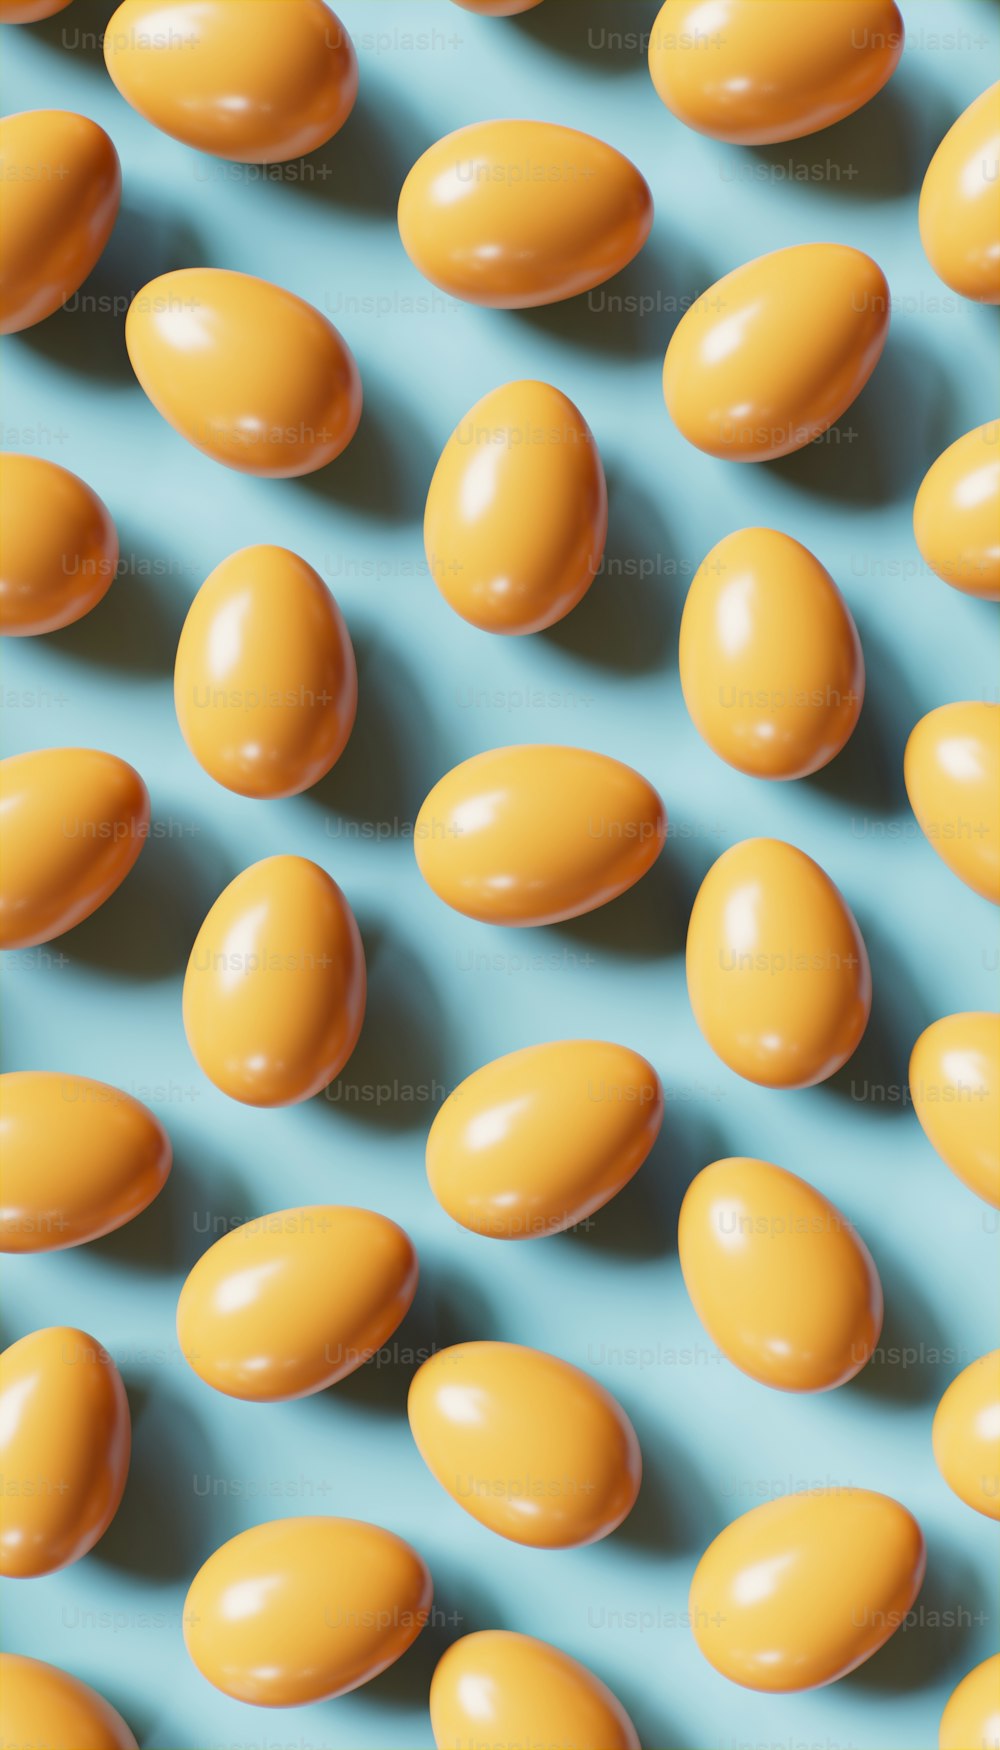 Un montón de huevos amarillos sentados encima de una superficie azul